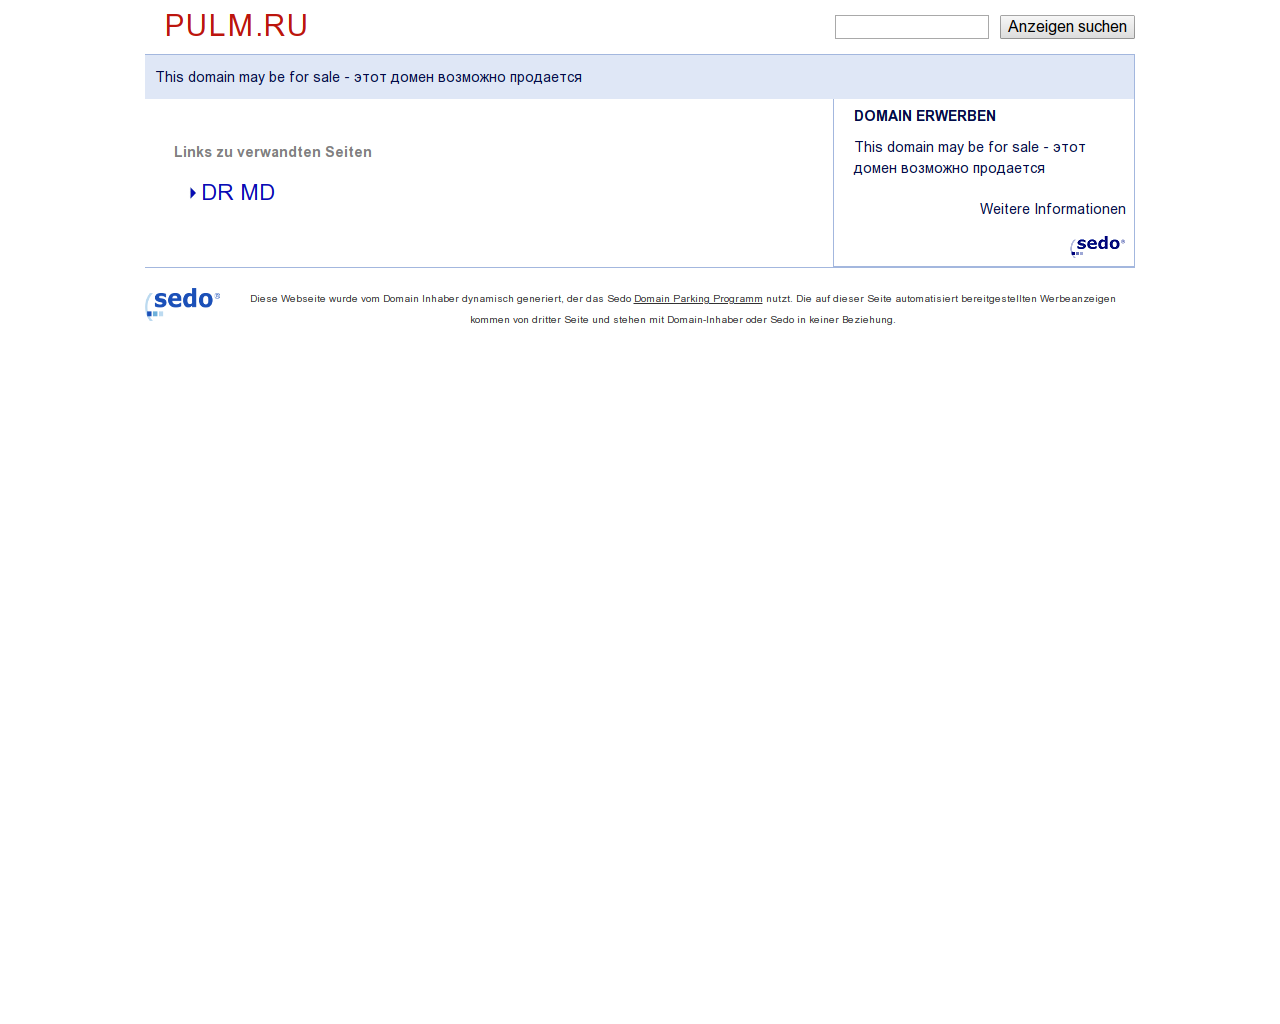 Изображение сайта pulm.ru в разрешении 1280x1024